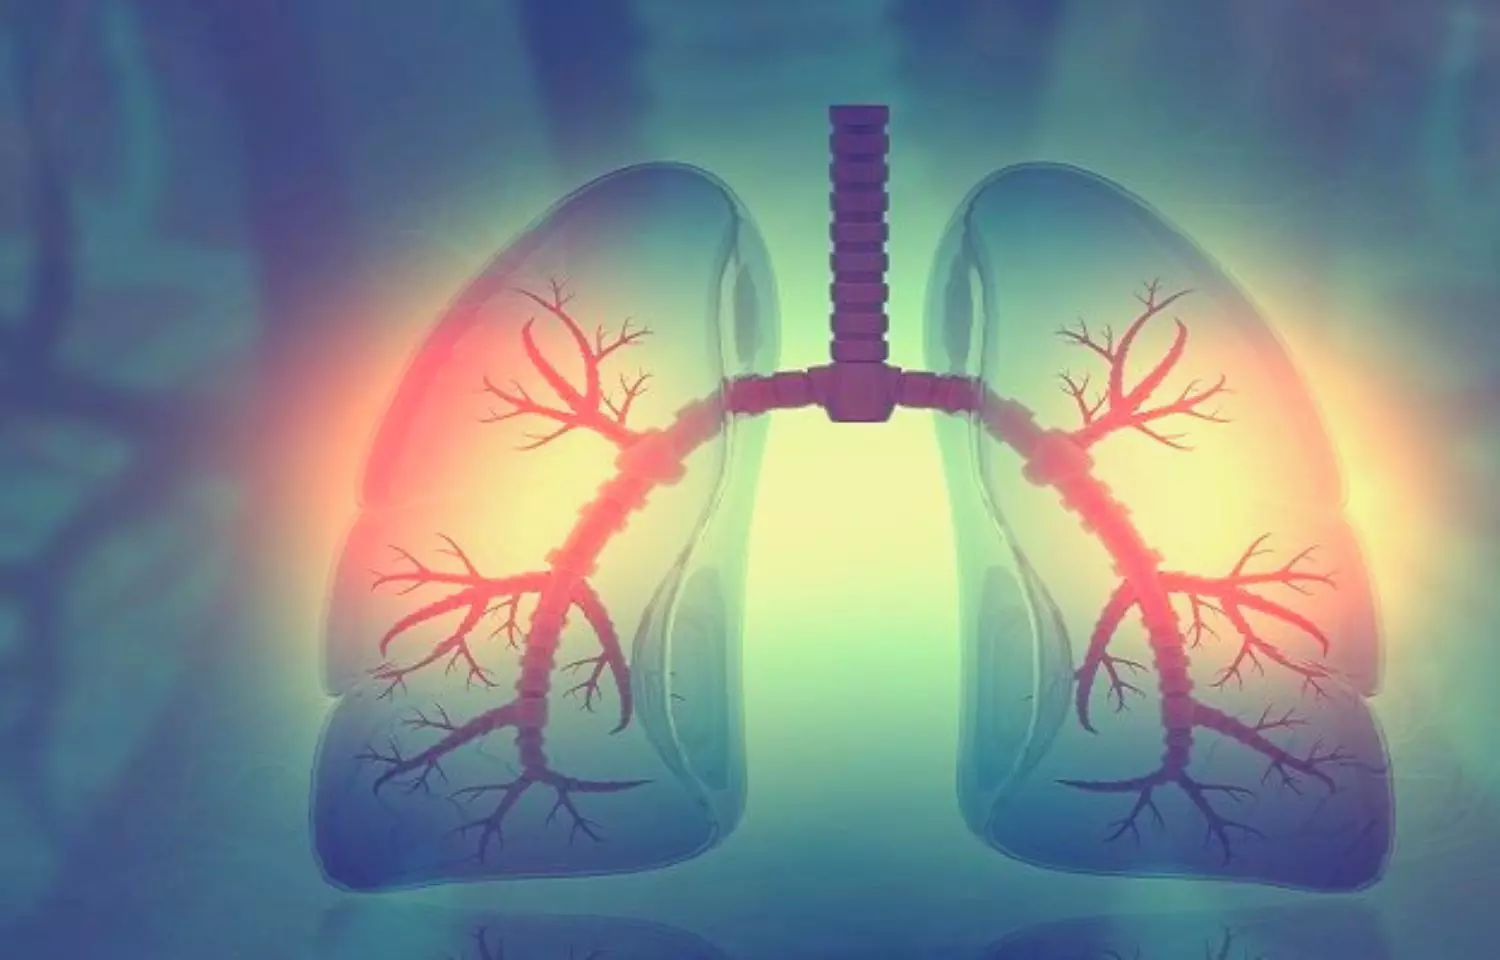 Nintedanib slows lung disease progression in systemic sclerosis over 100 weeks: SENSCIS trial